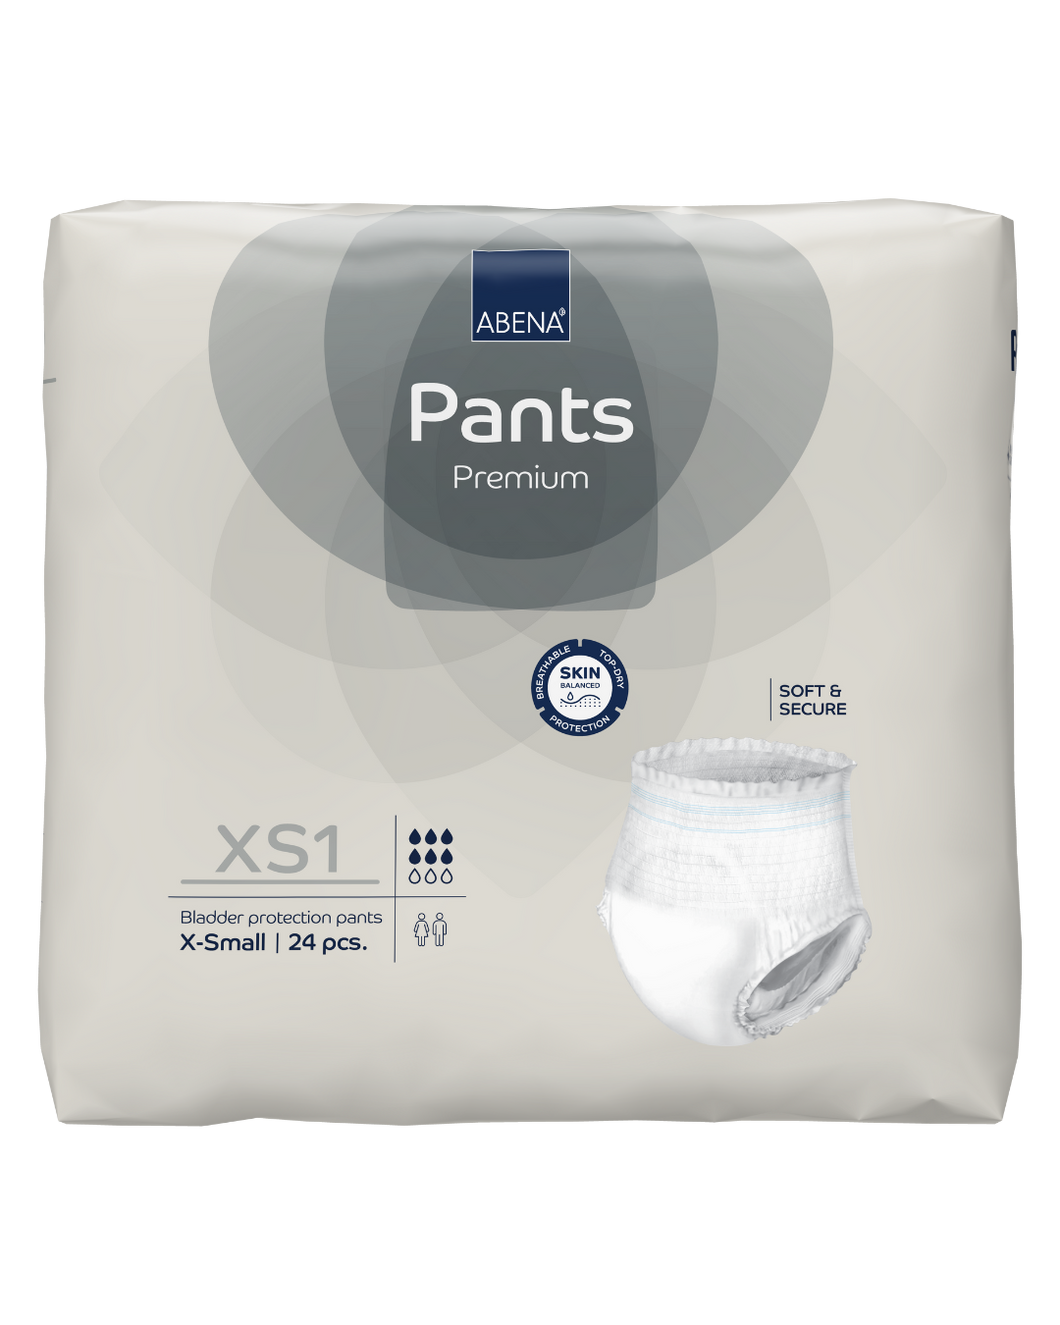 Abena Pants XS1